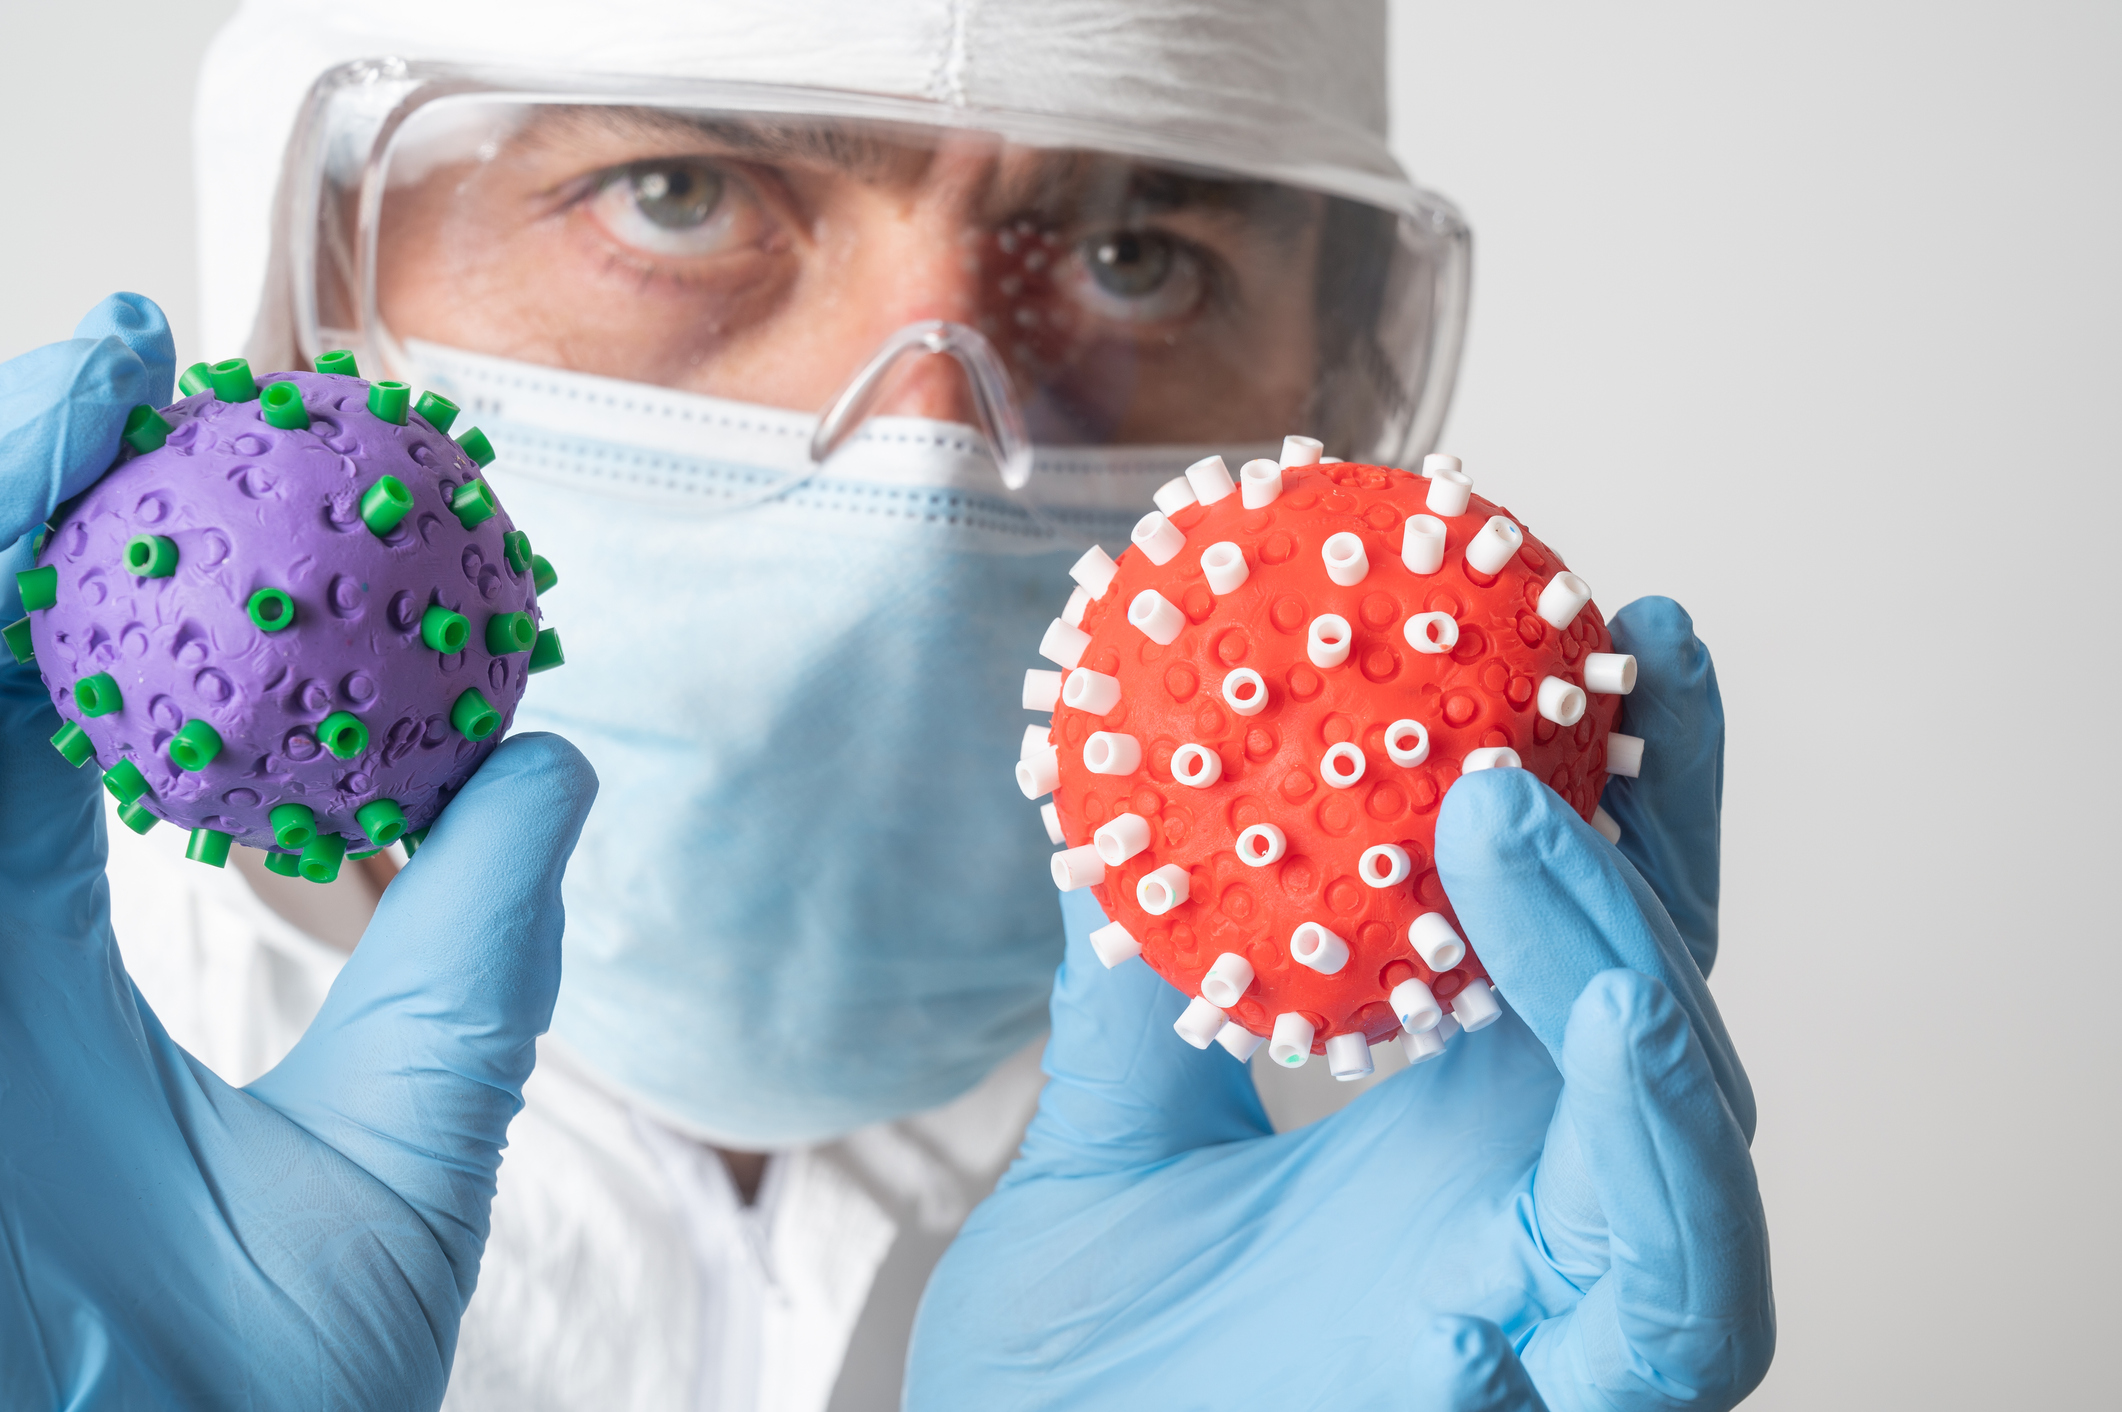 Los expertos intenta comprender si hay algún componente biológico para inmunizar a la gente (Getty Images)